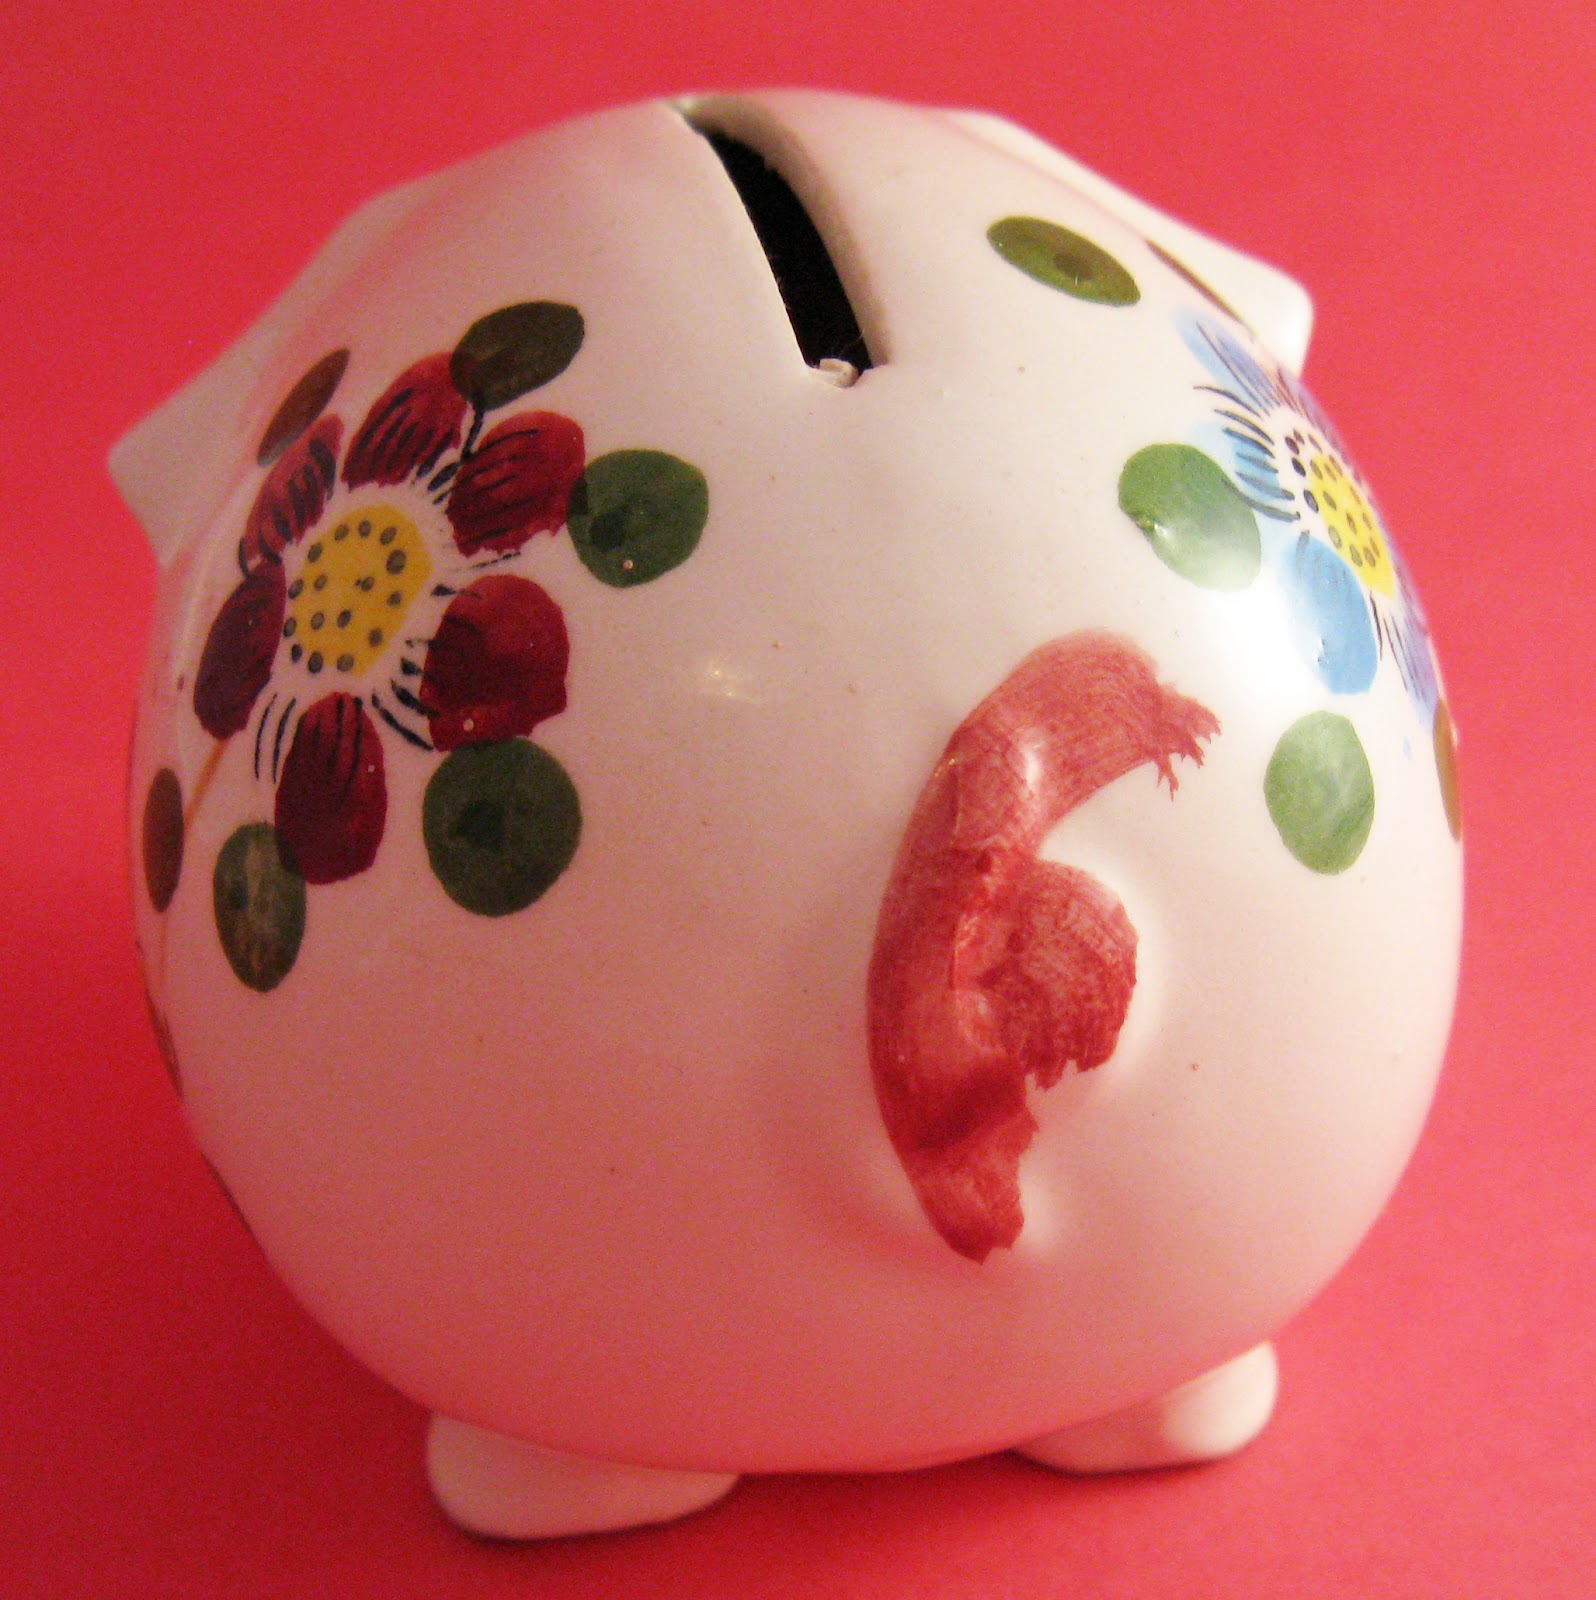 Blog Faced Girl: Vintage Finds - Piggy Bank